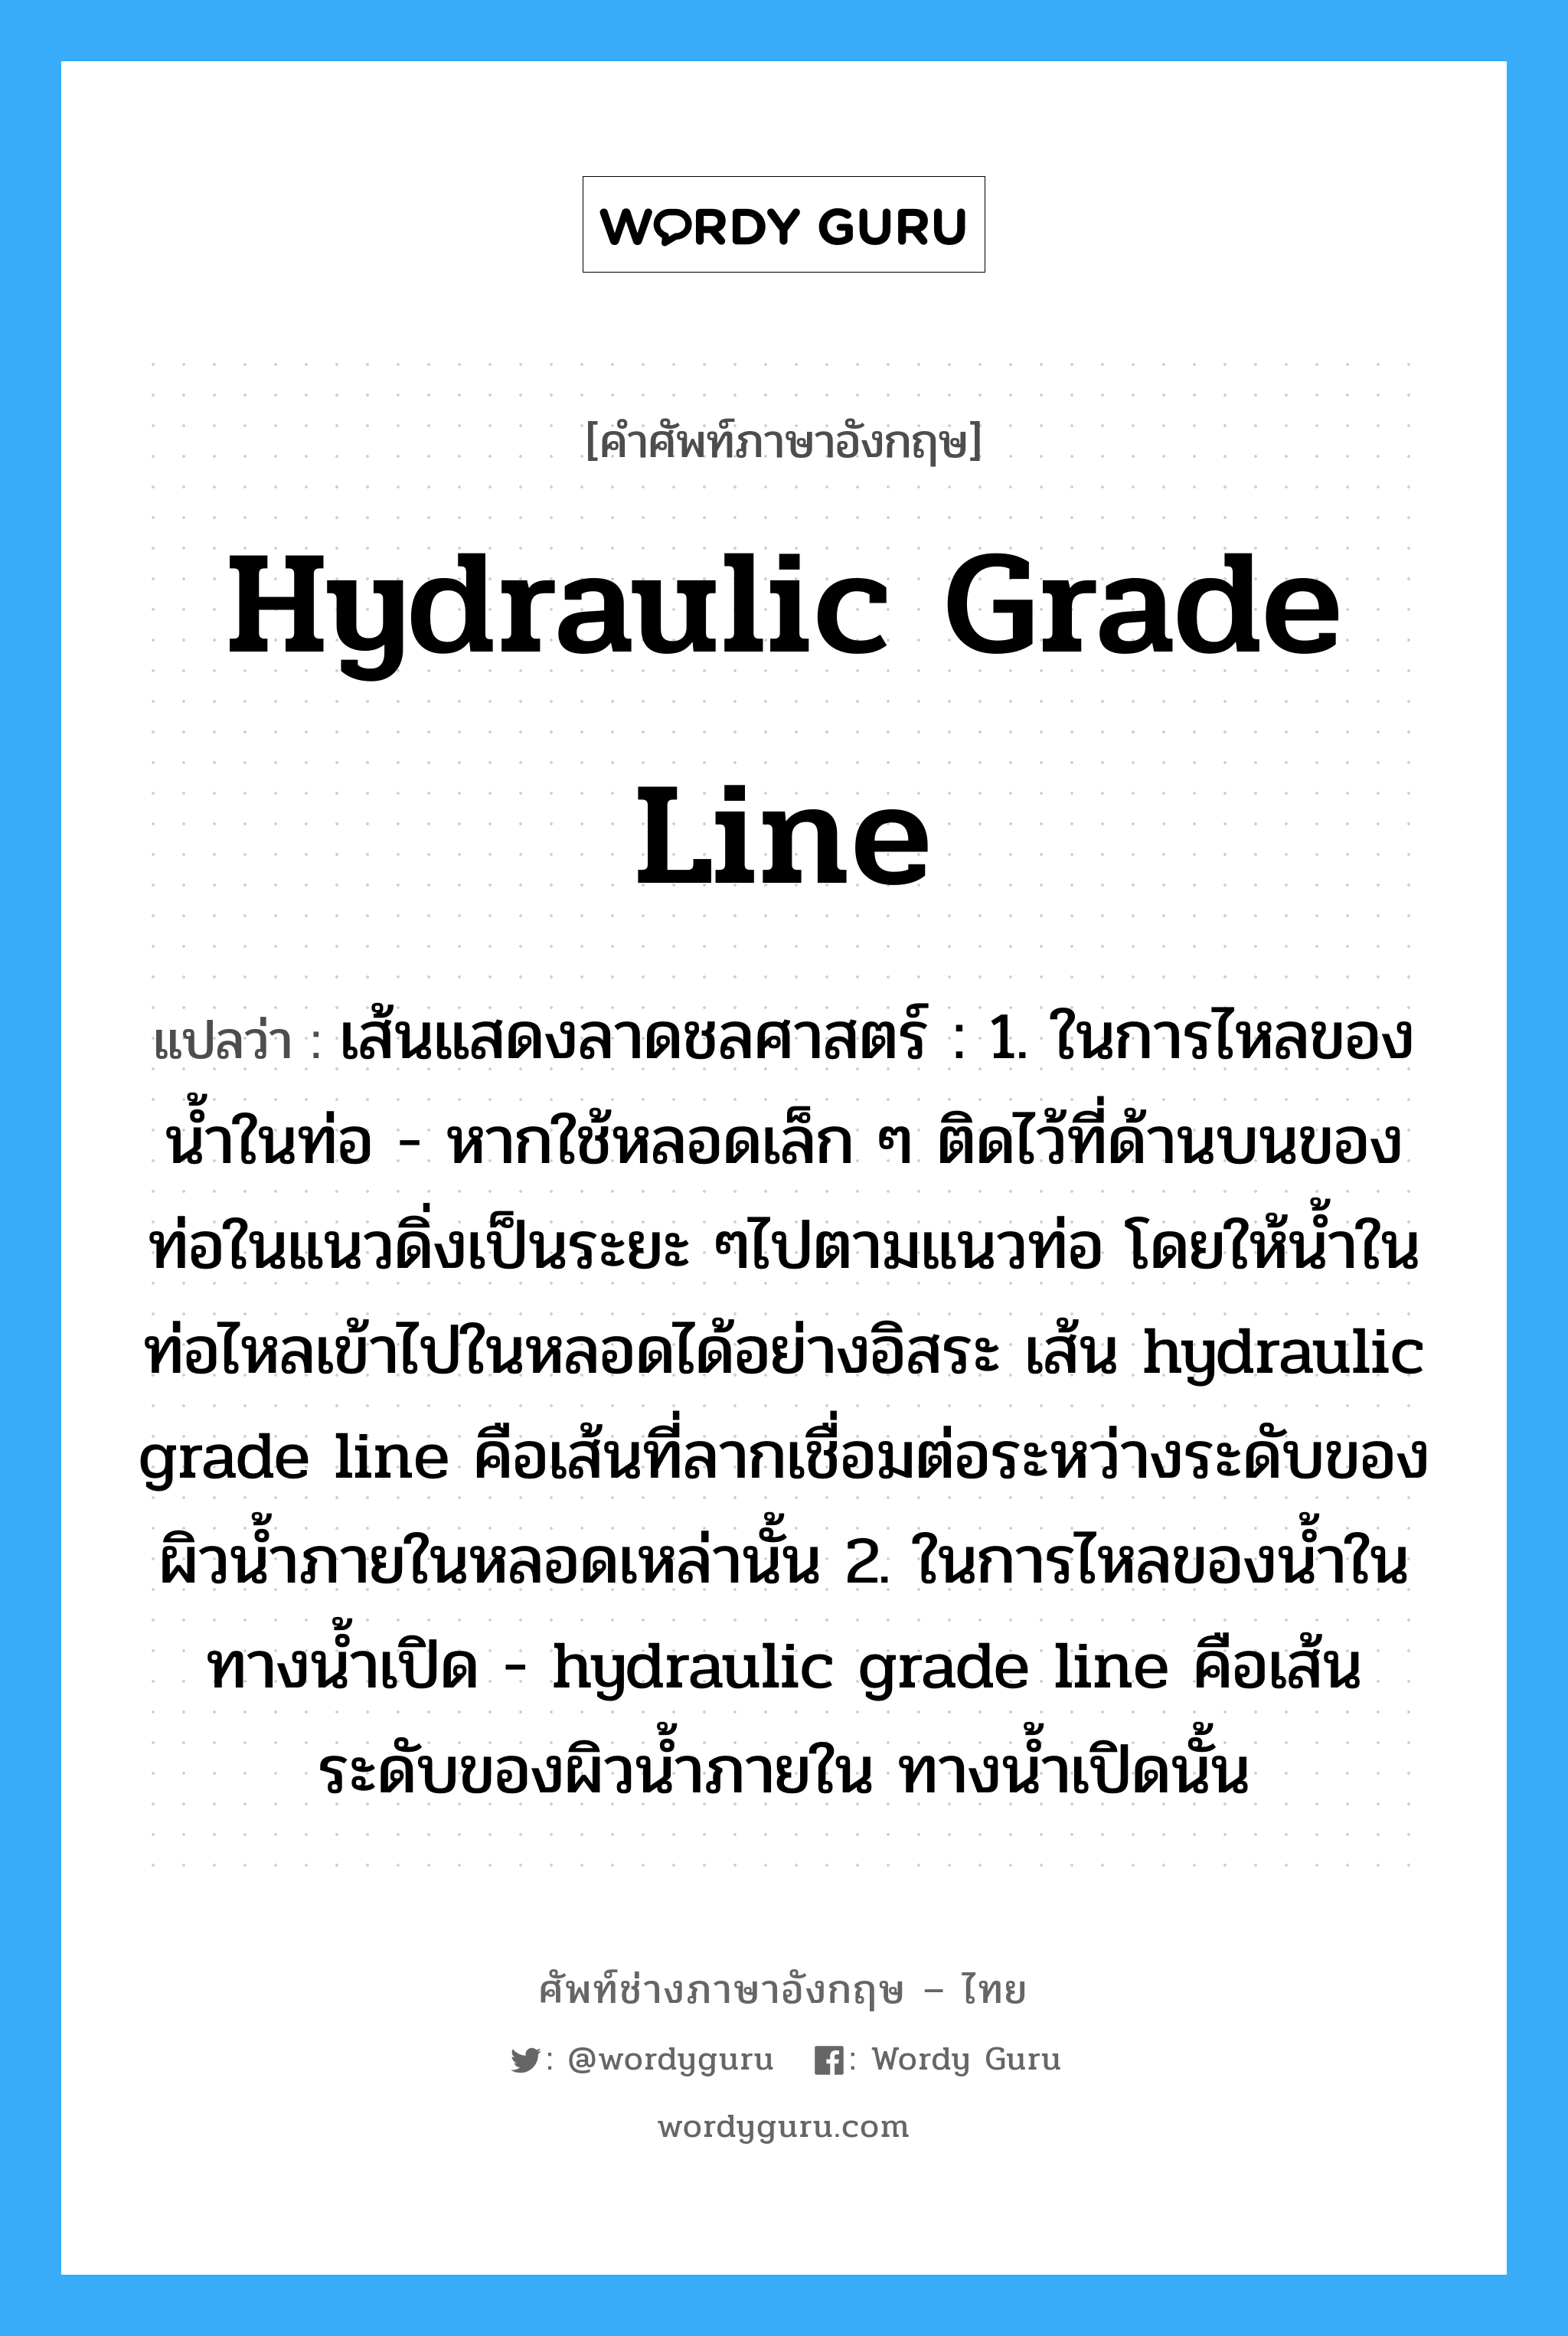 hydraulic grade line แปลว่า?, คำศัพท์ช่างภาษาอังกฤษ - ไทย hydraulic grade line คำศัพท์ภาษาอังกฤษ hydraulic grade line แปลว่า เส้นแสดงลาดชลศาสตร์ : 1. ในการไหลของน้ำในท่อ - หากใช้หลอดเล็ก ๆ ติดไว้ที่ด้านบนของท่อในแนวดิ่งเป็นระยะ ๆไปตามแนวท่อ โดยให้น้ำในท่อไหลเข้าไปในหลอดได้อย่างอิสระ เส้น hydraulic grade line คือเส้นที่ลากเชื่อมต่อระหว่างระดับของผิวน้ำภายในหลอดเหล่านั้น 2. ในการไหลของน้ำในทางน้ำเปิด - hydraulic grade line คือเส้นระดับของผิวน้ำภายใน ทางน้ำเปิดนั้น